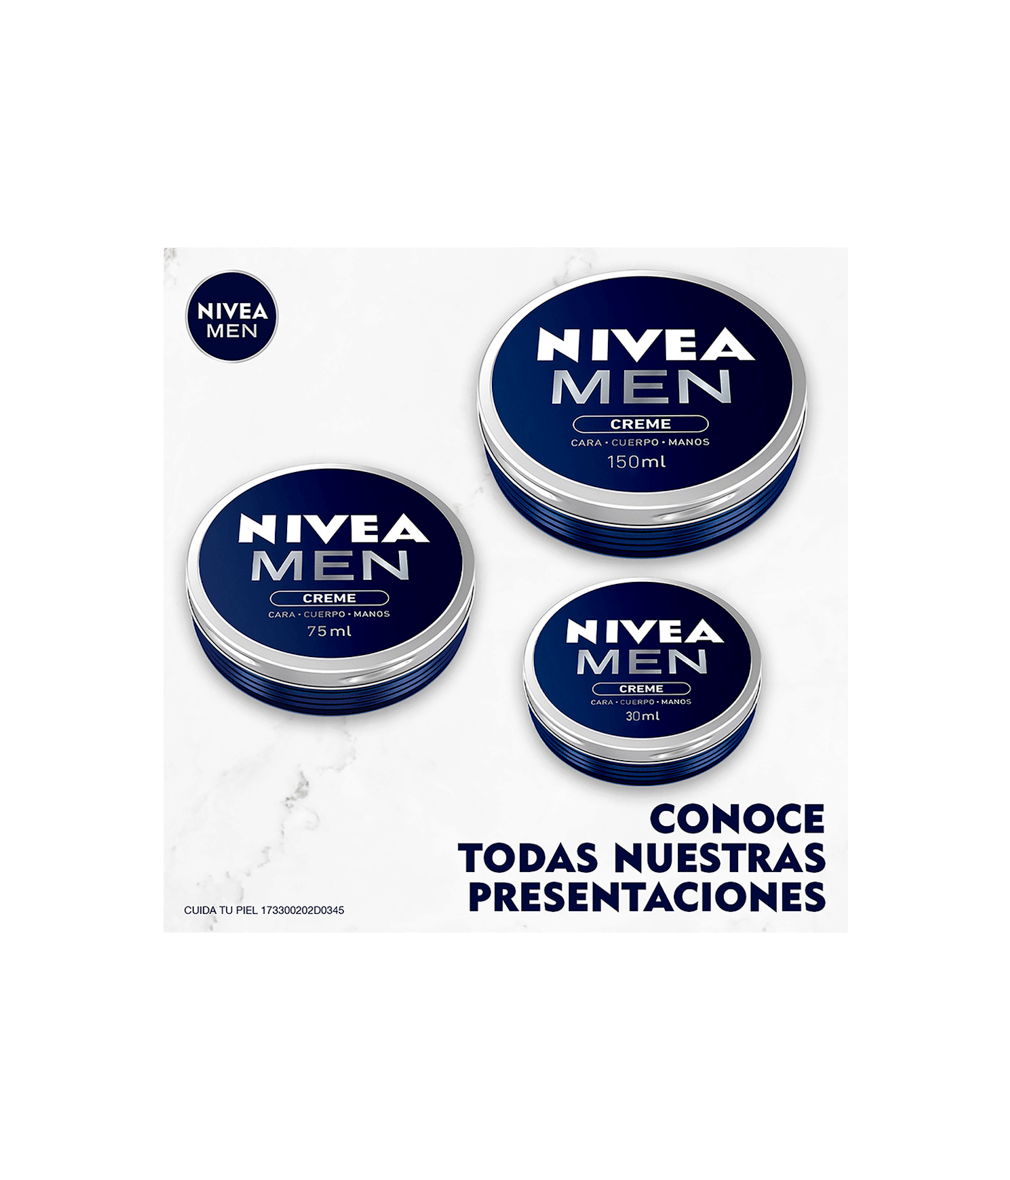 Nivea Men Creme Crema Humectante Multipropósito, 75ml